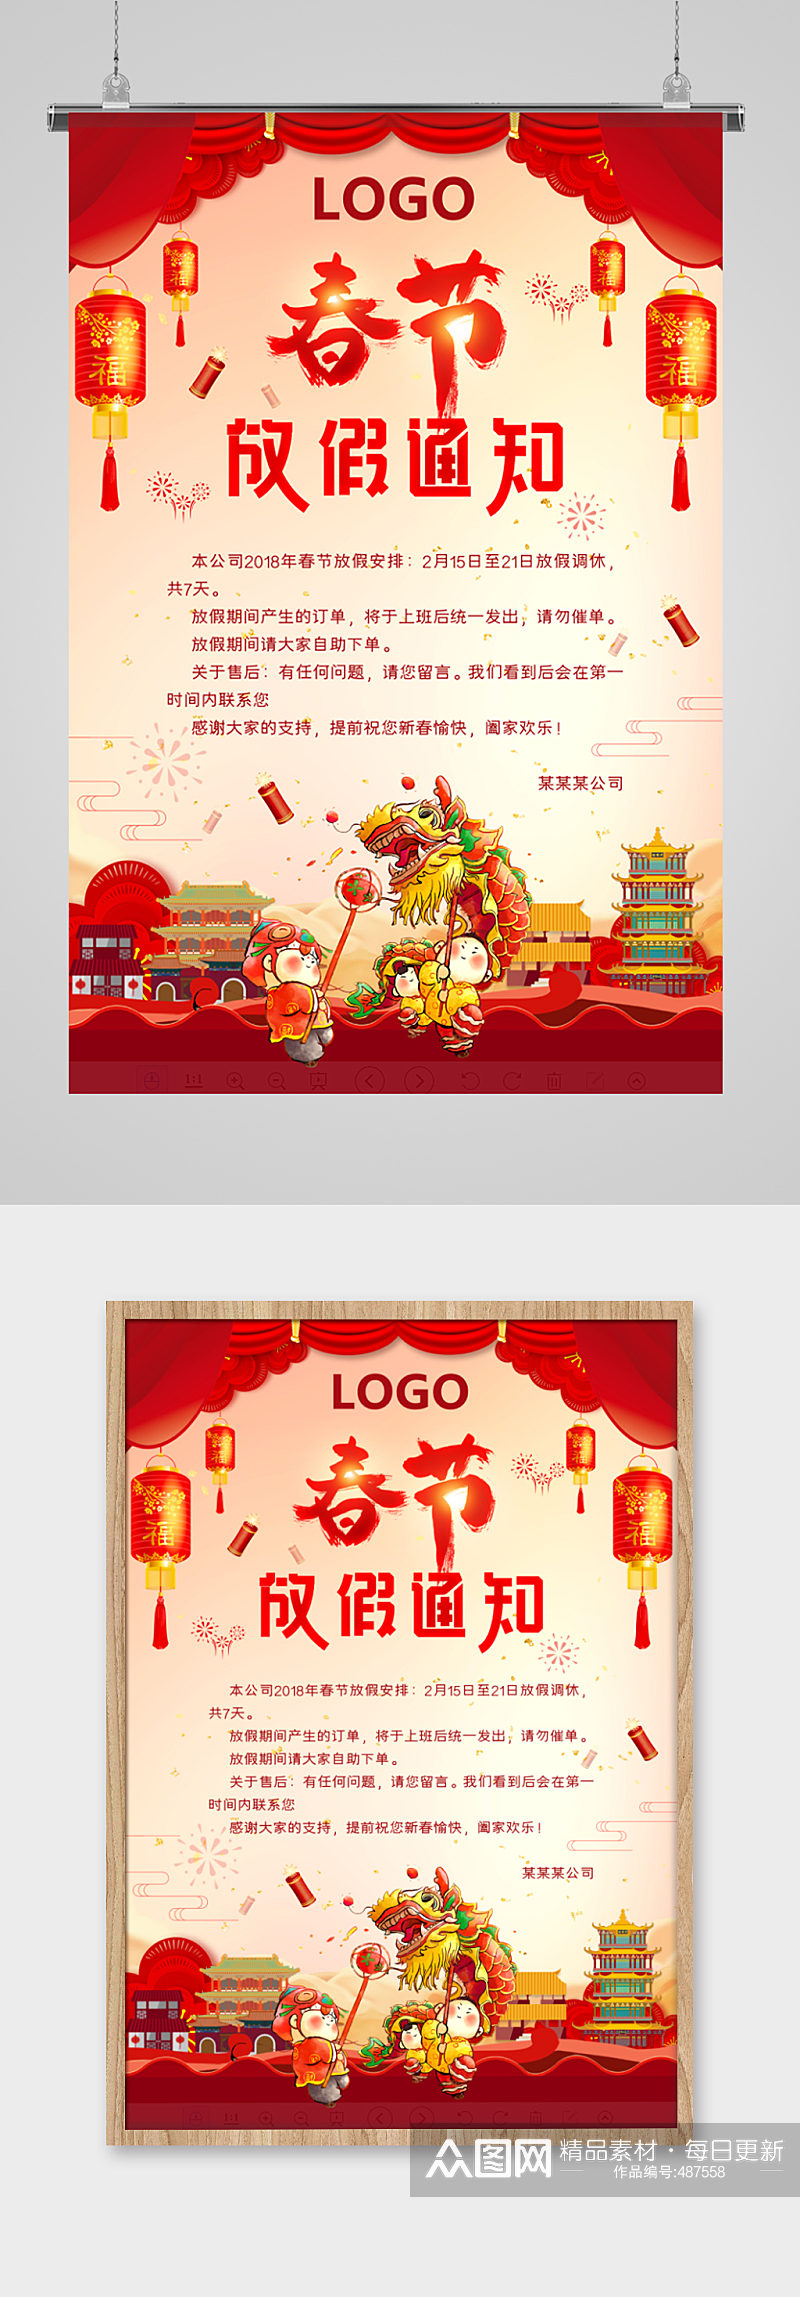 春节舞狮子放假通知海报素材